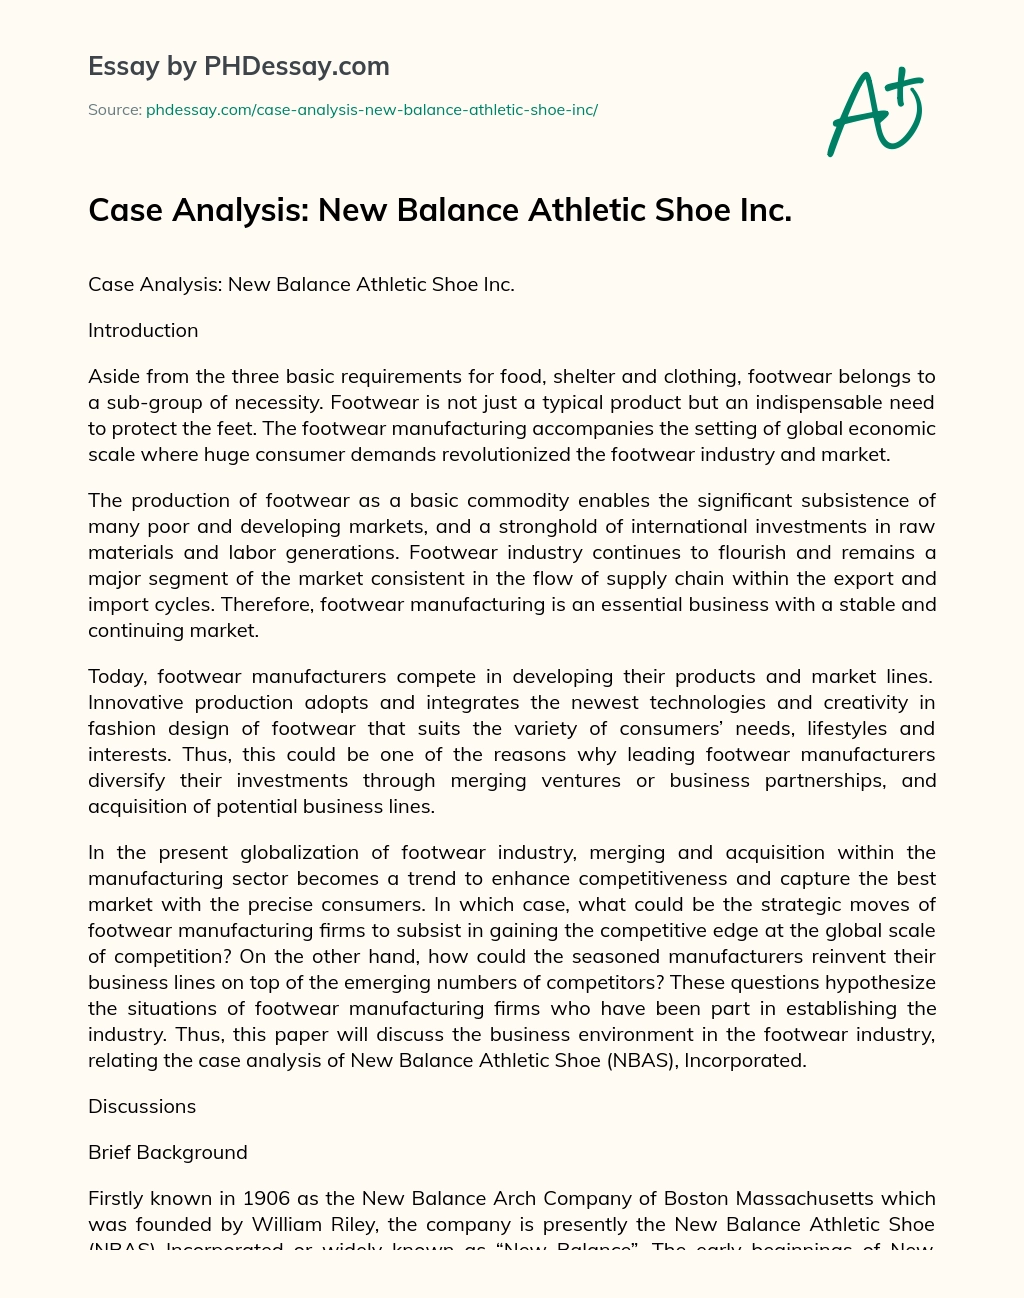 Case analysis: new balance athletic shoe Inc. essay